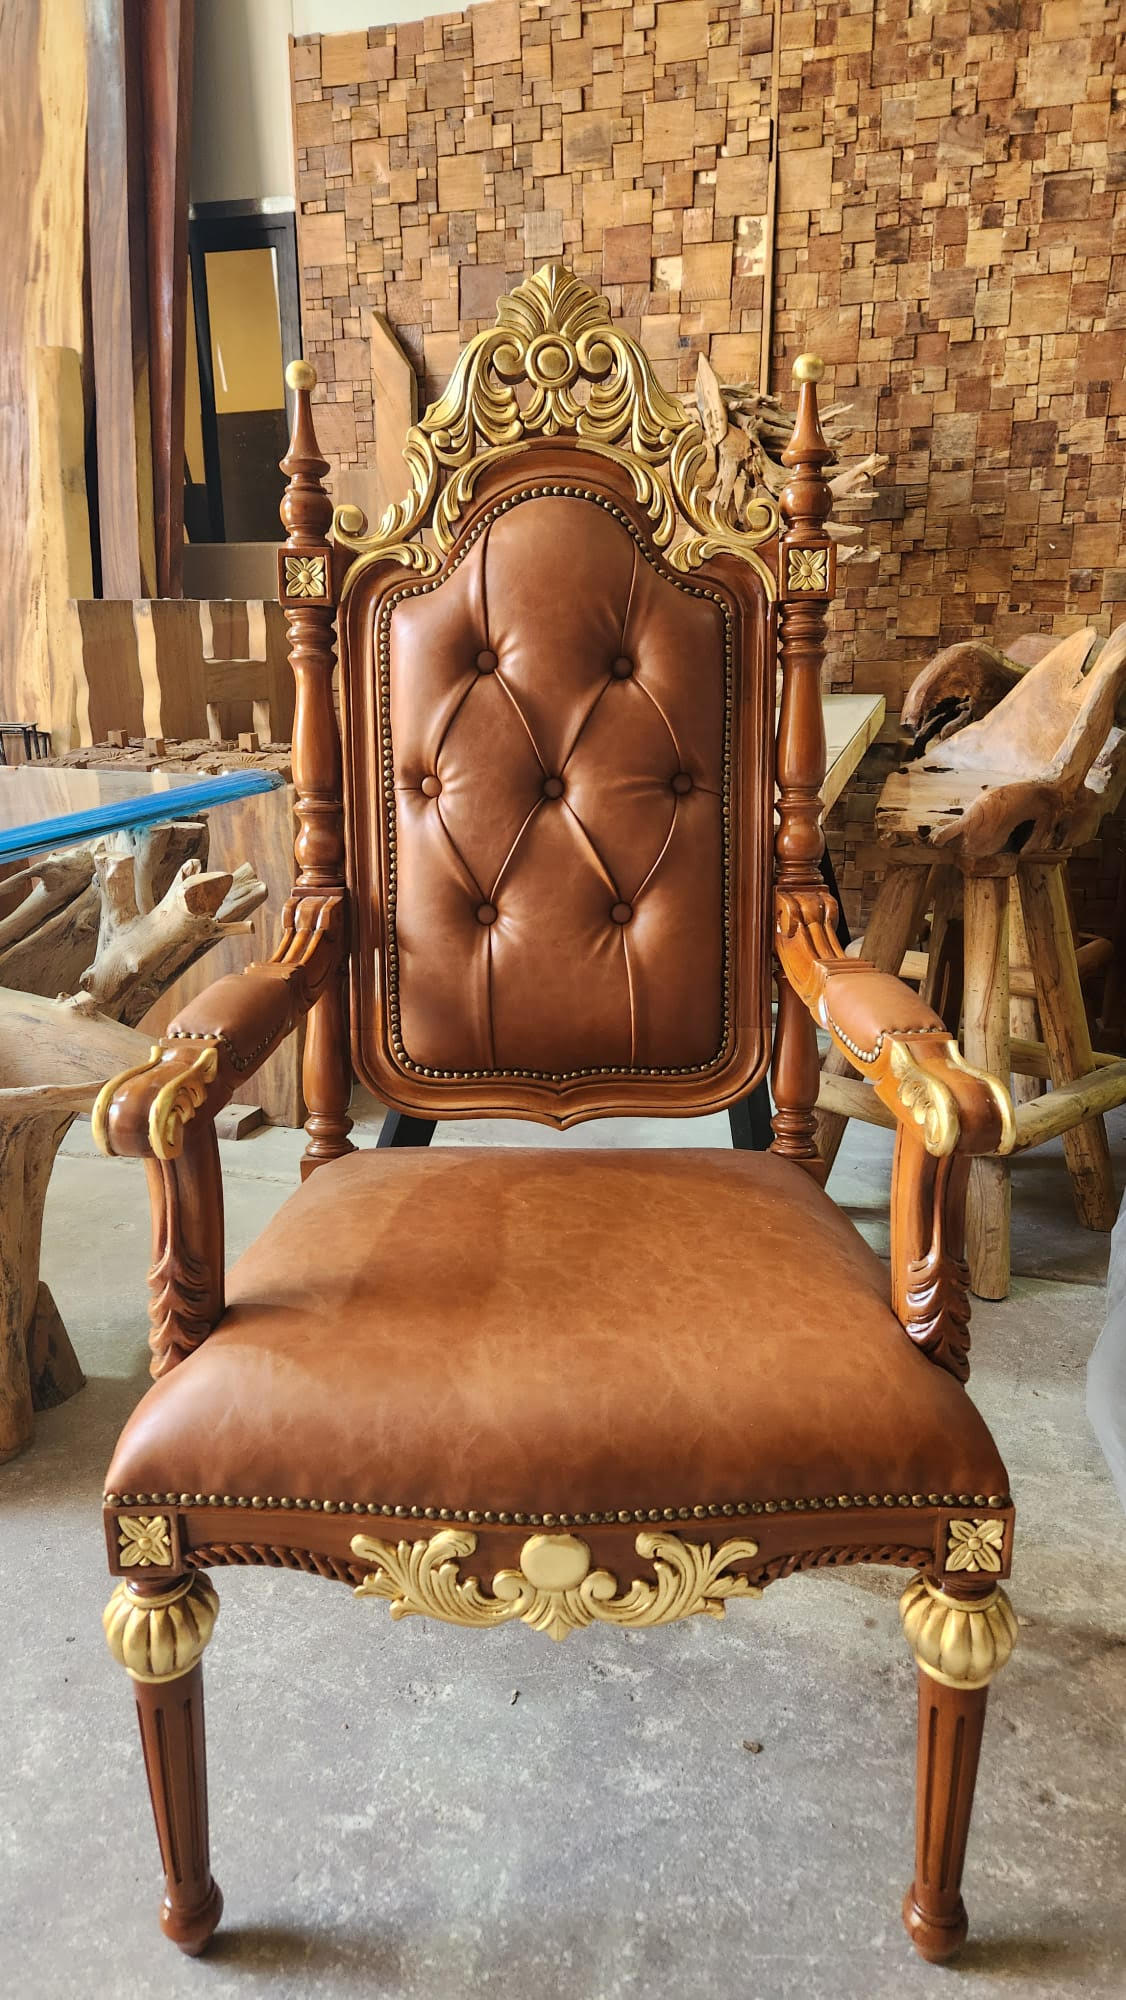 כיסא אדמו"ר דגם 2614 מהגוני בשילוב זהב